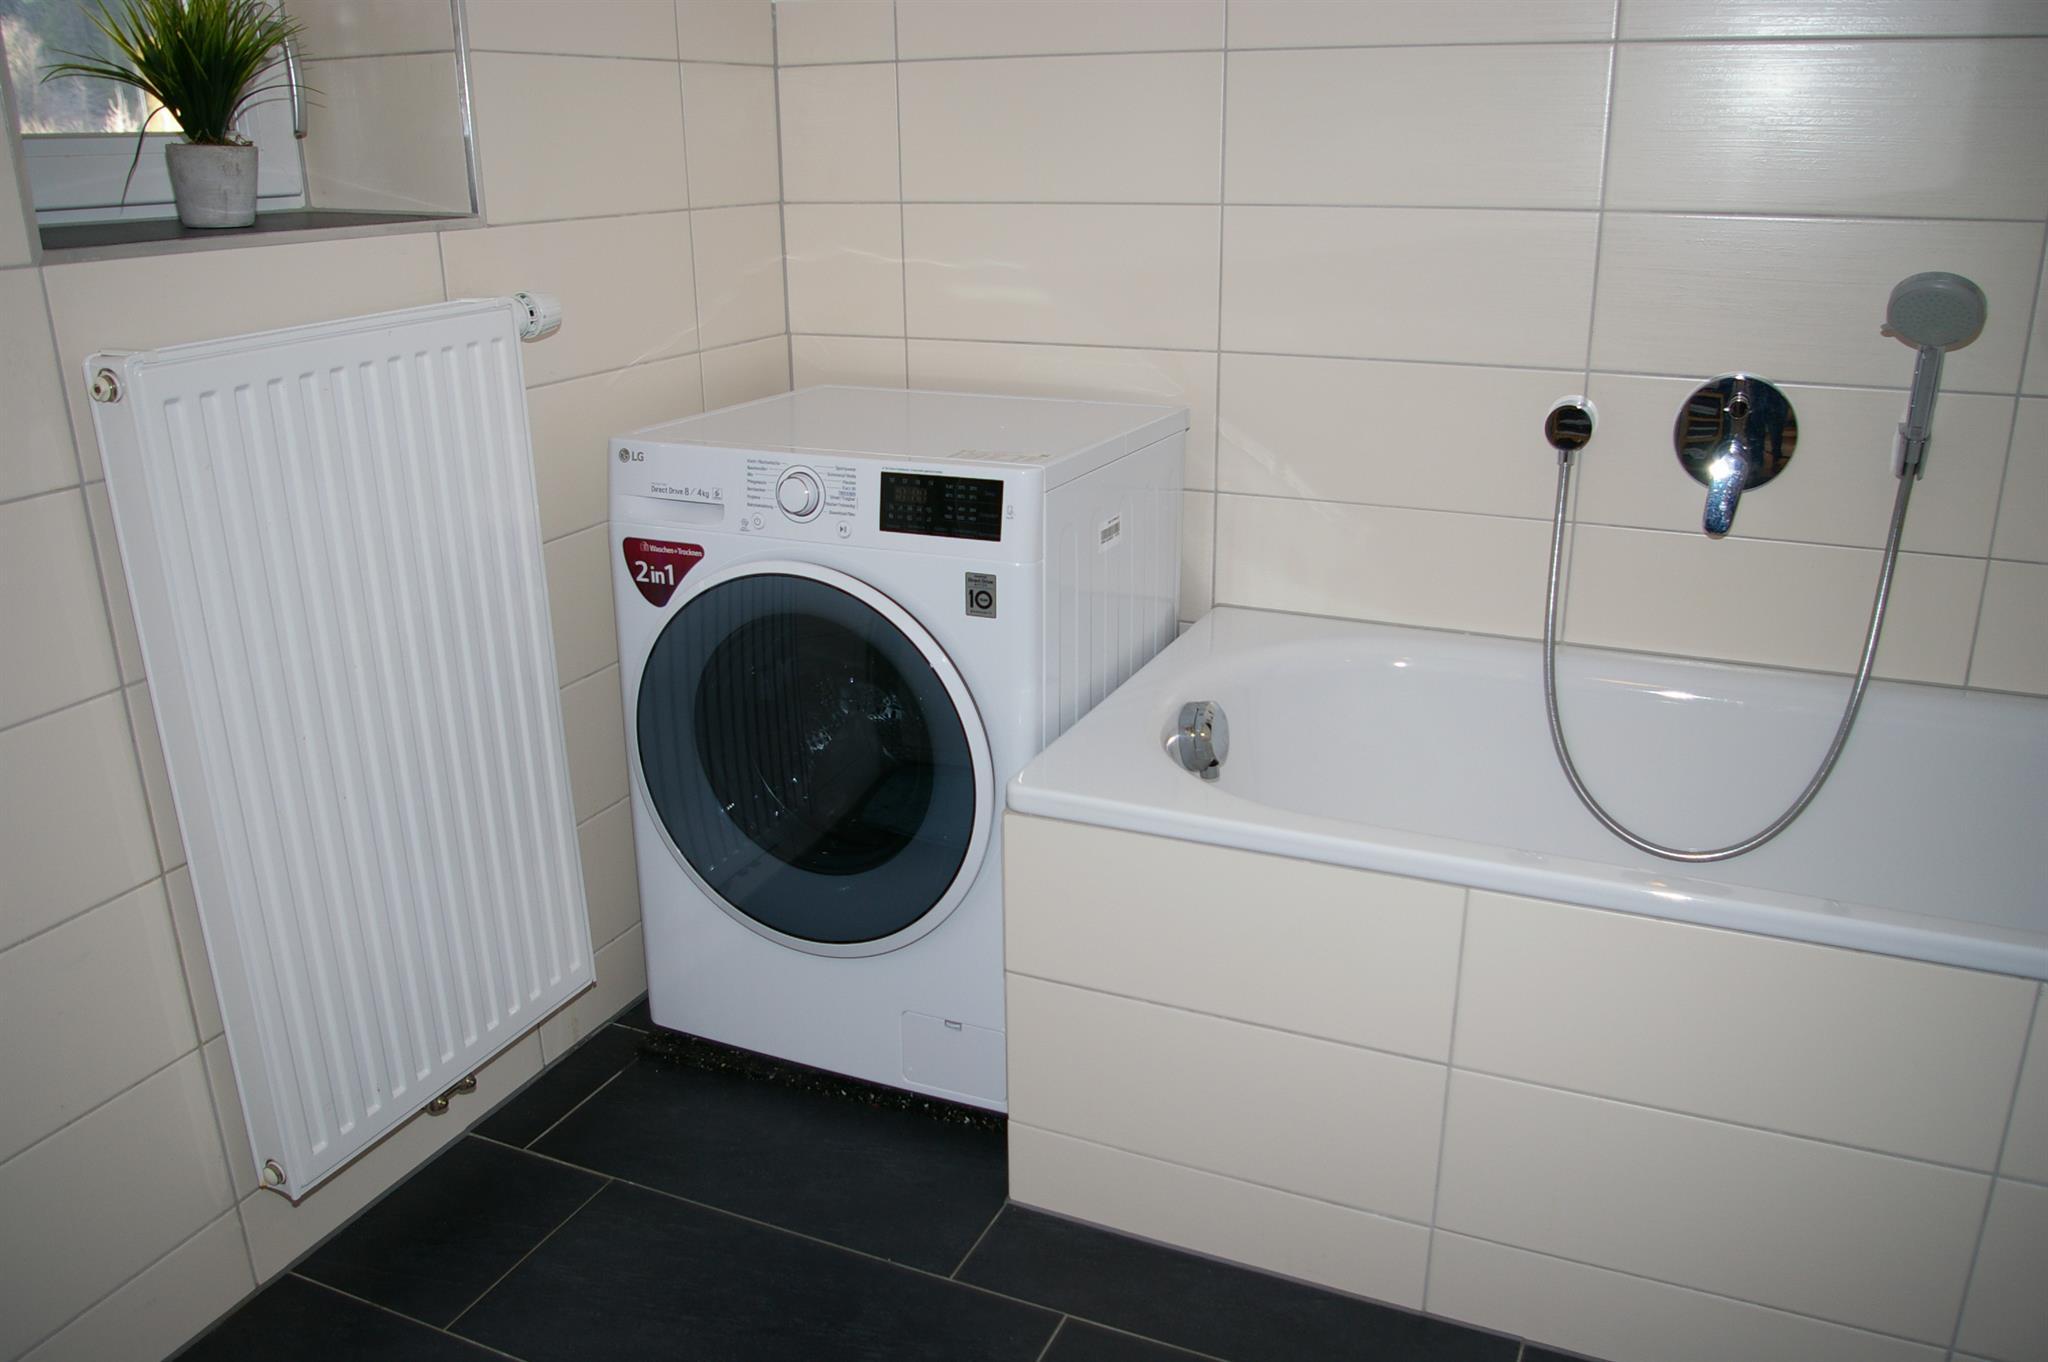 Waschmaschine und Trockner in einem - Kombigerät